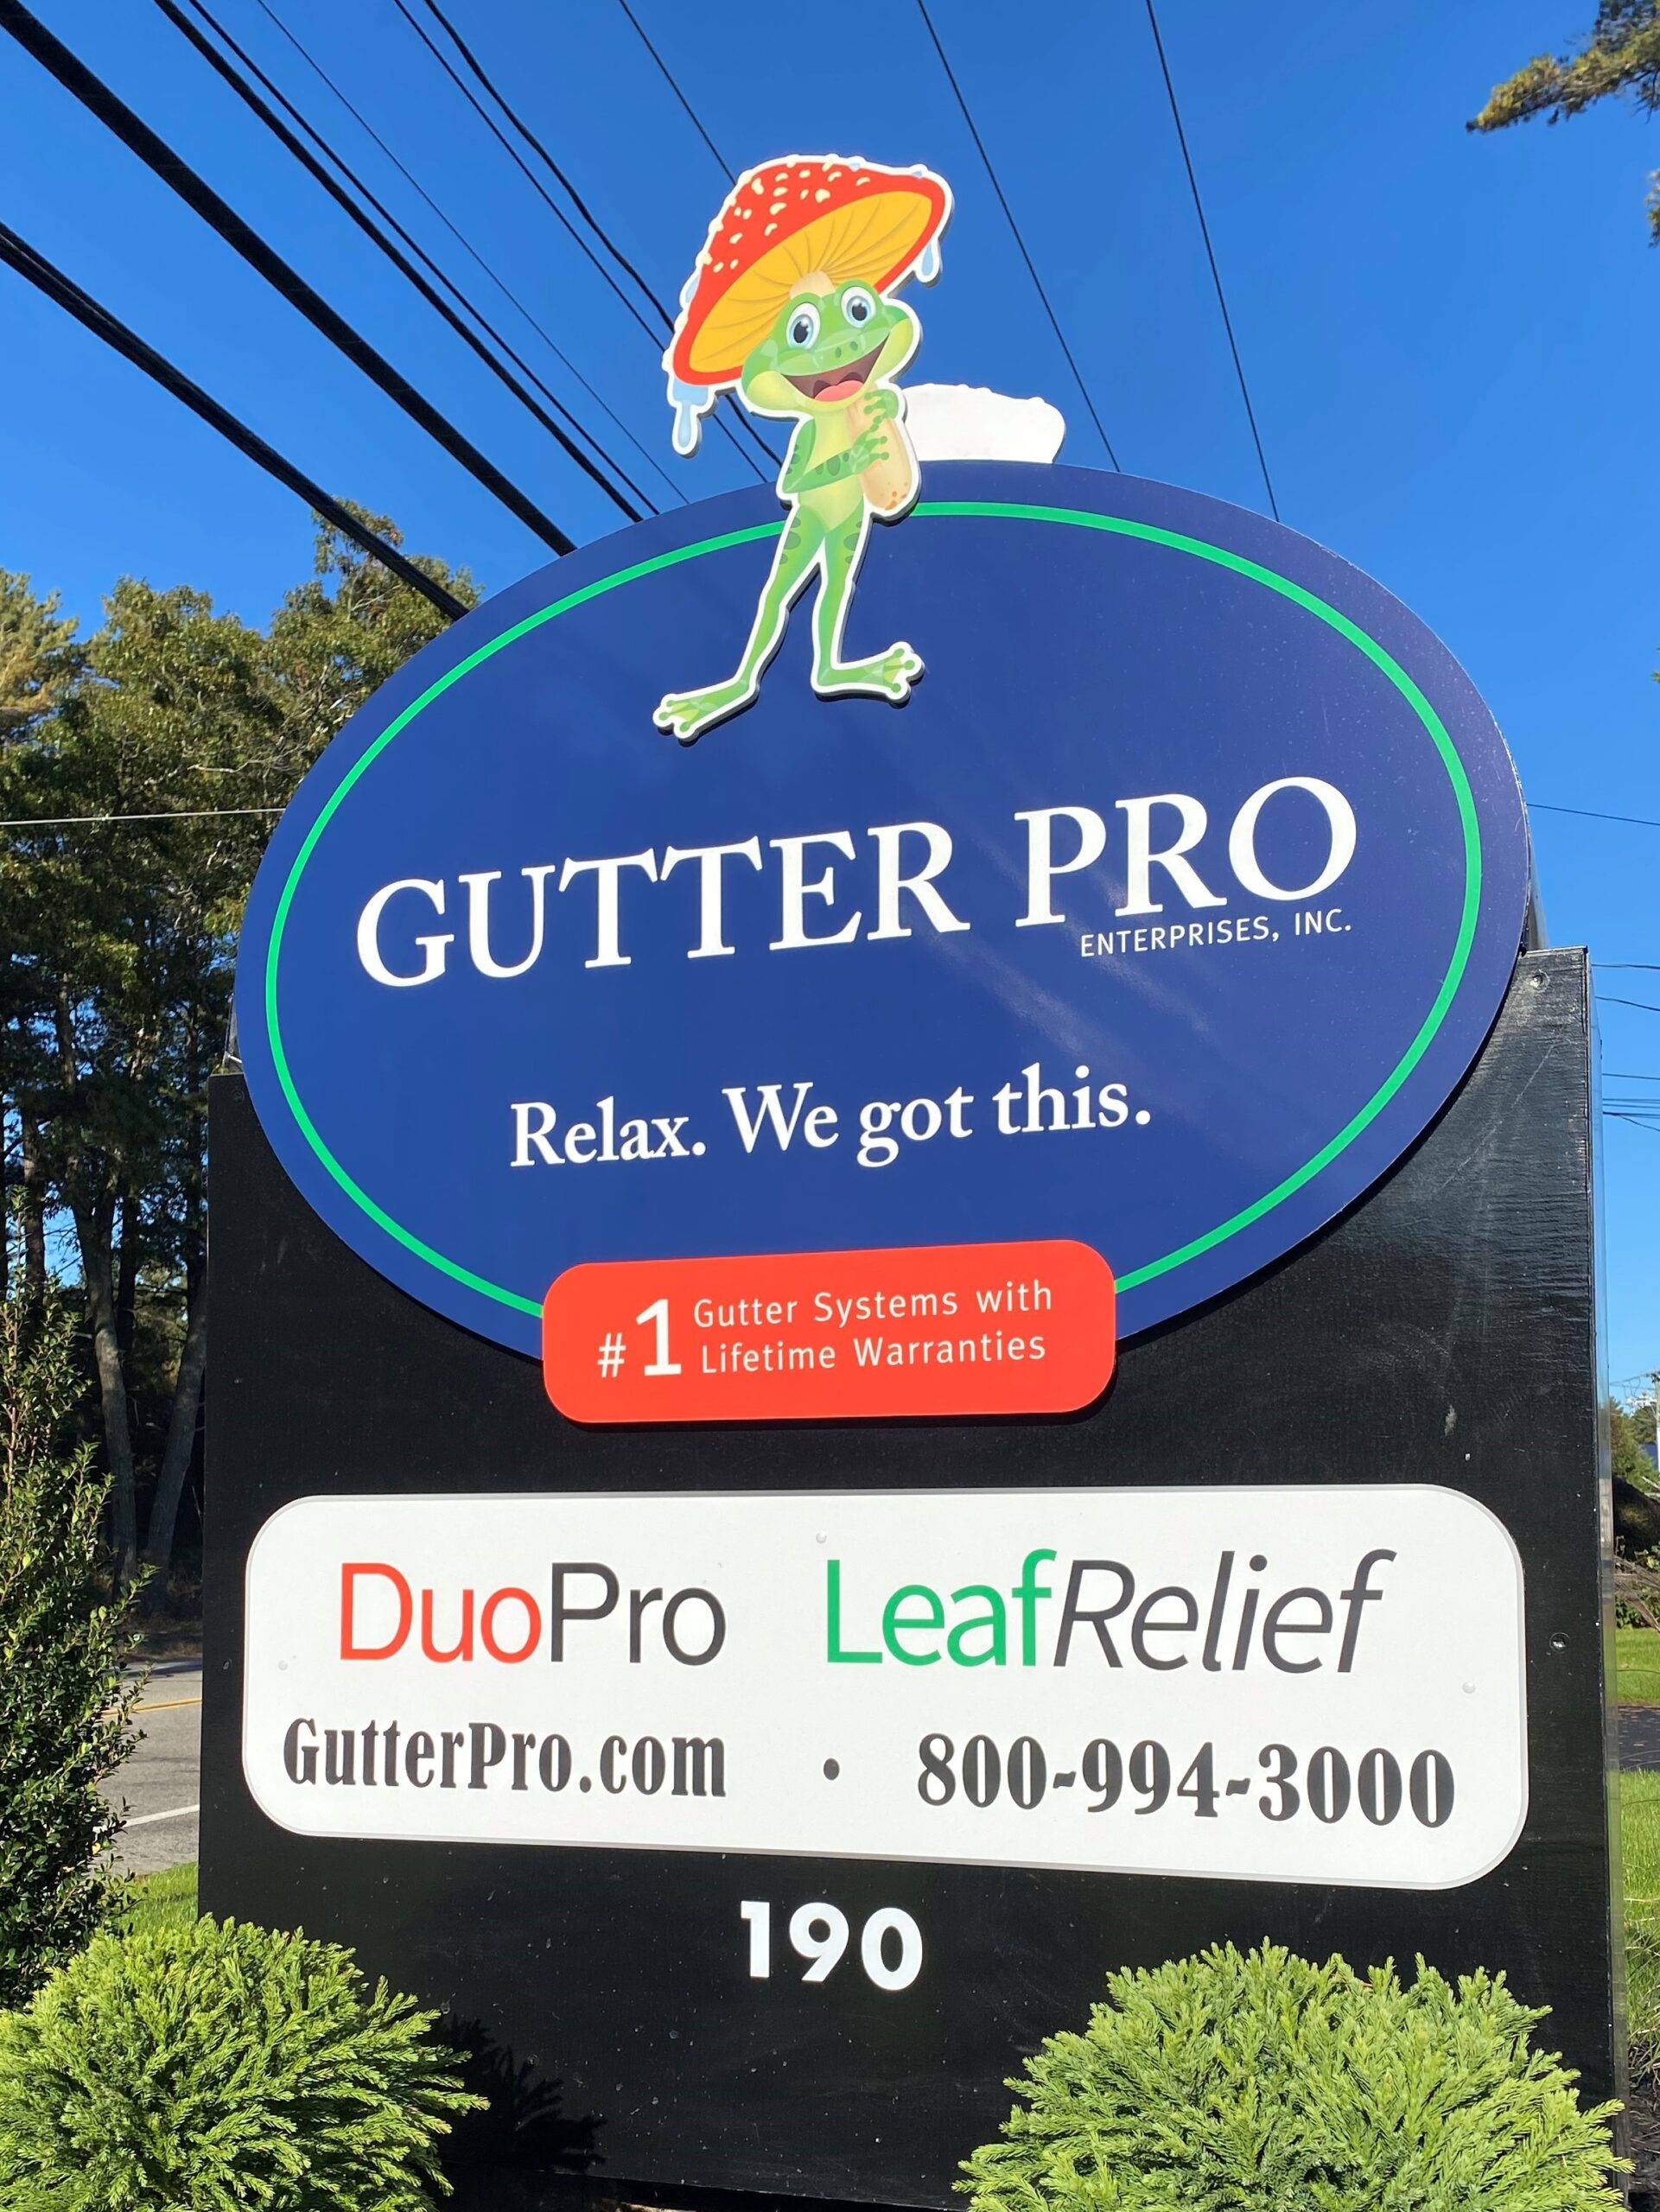 Gutter Pro Enterprises